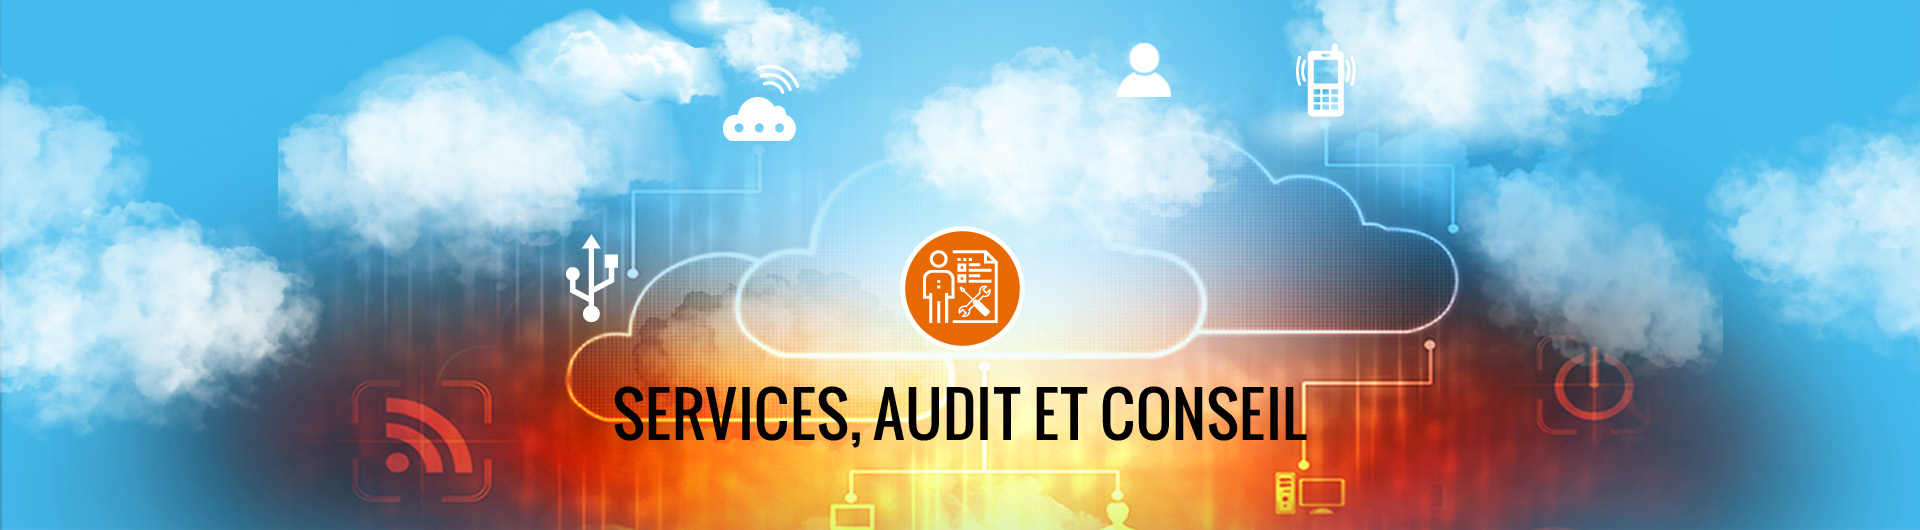 ACS'IT - Services, audits et conseils